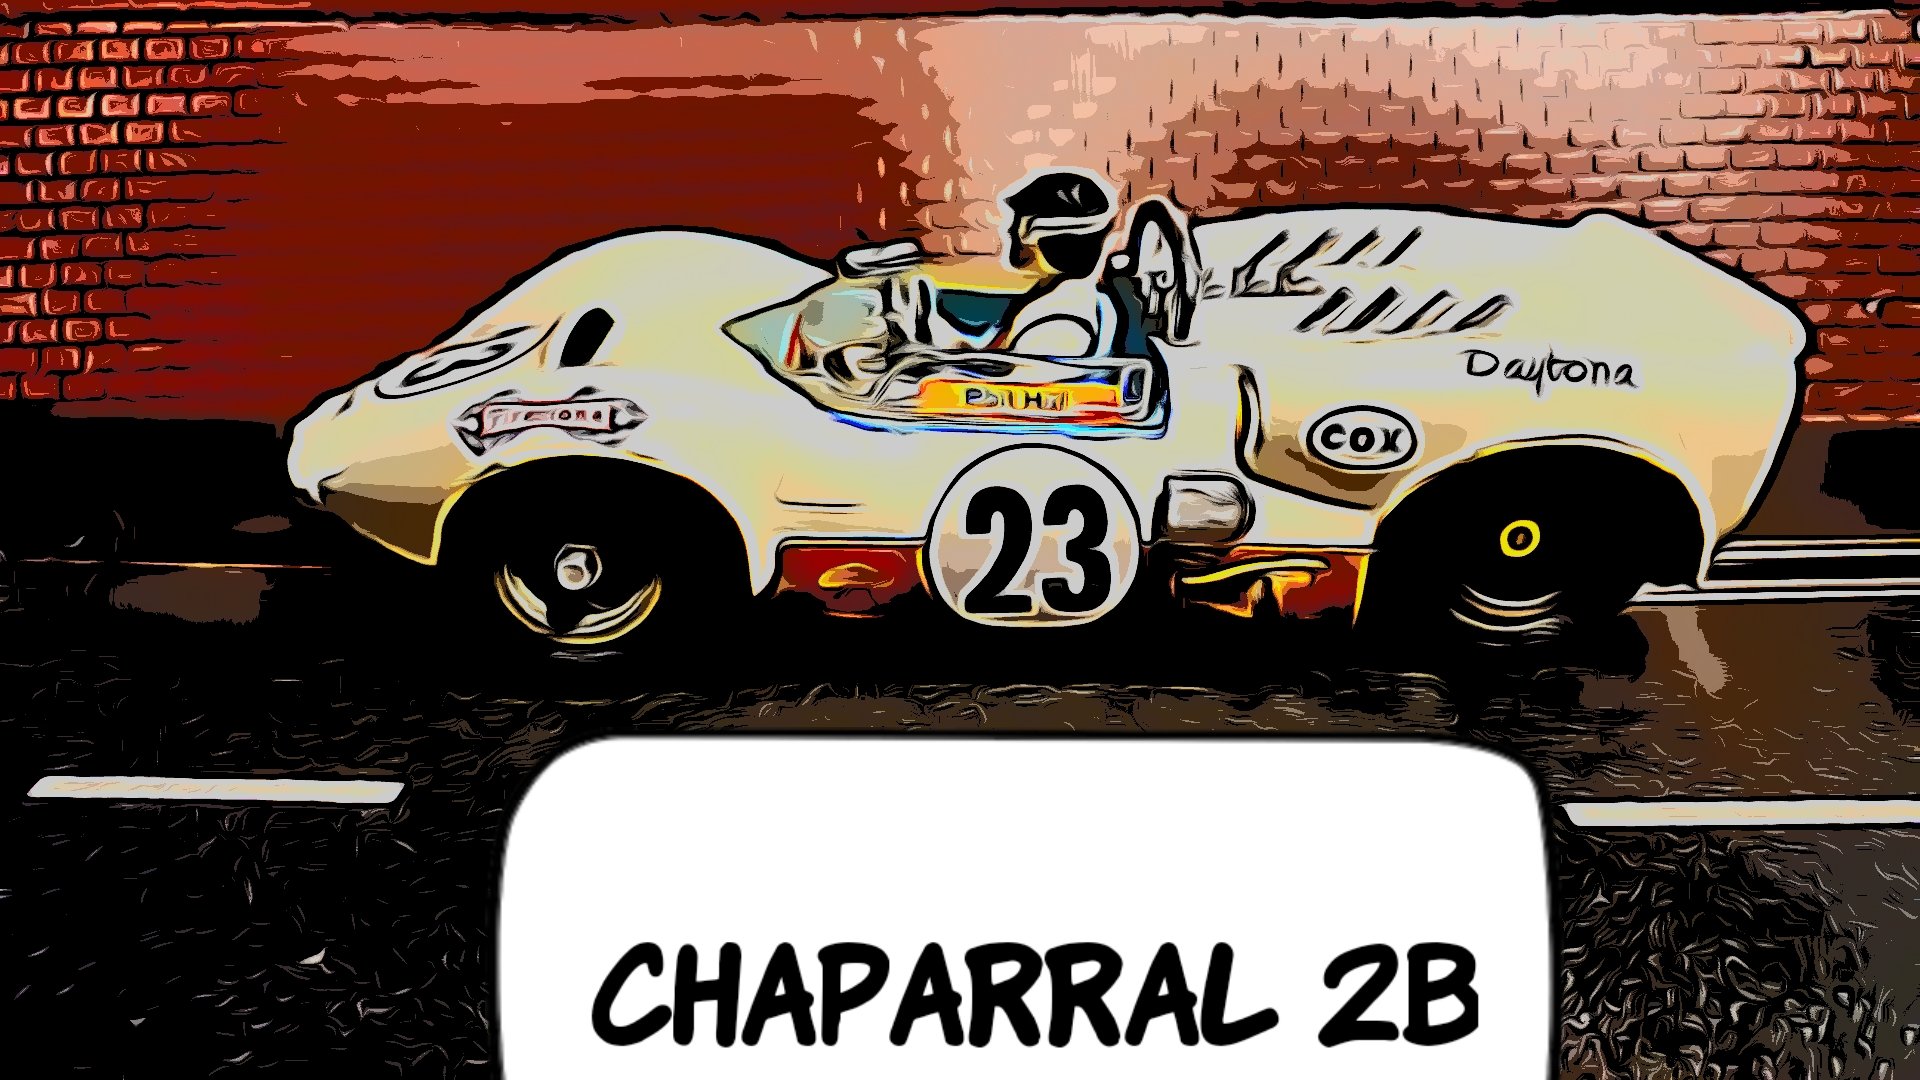 *SOLD* * Sale * COX Chaparral 2B Racer 1/24 Scale Slot Car 23